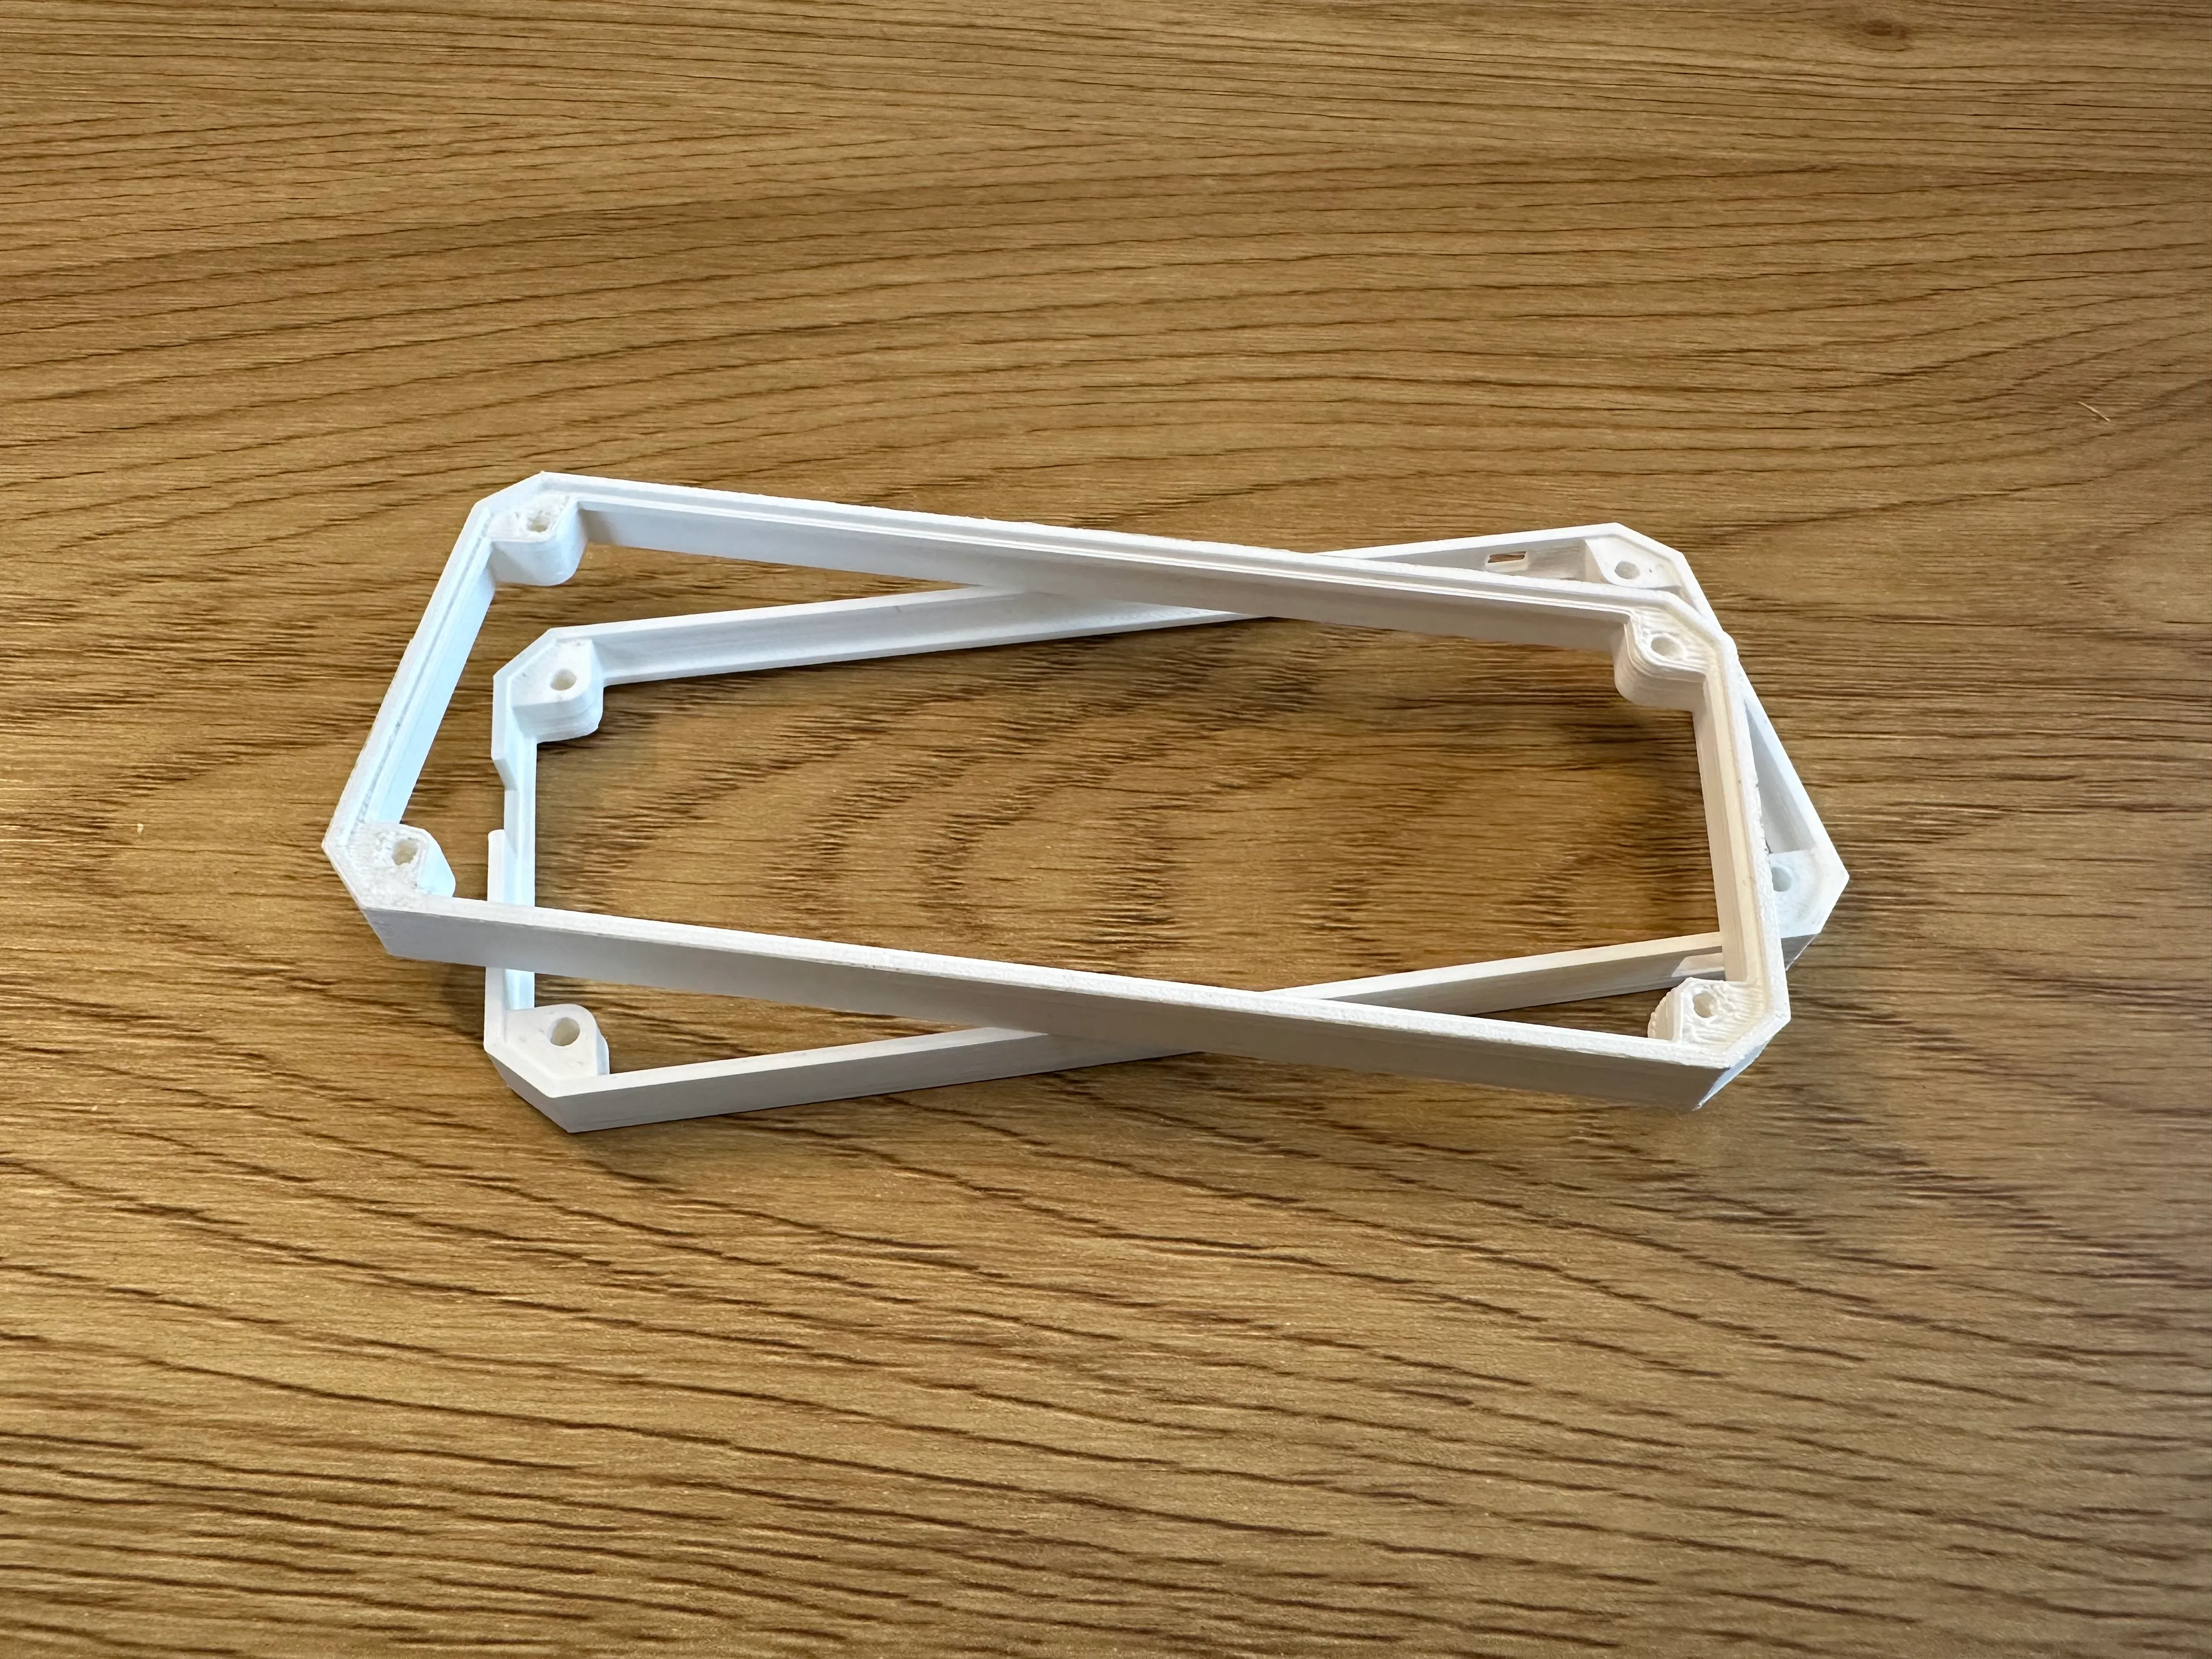 3D-printed frame